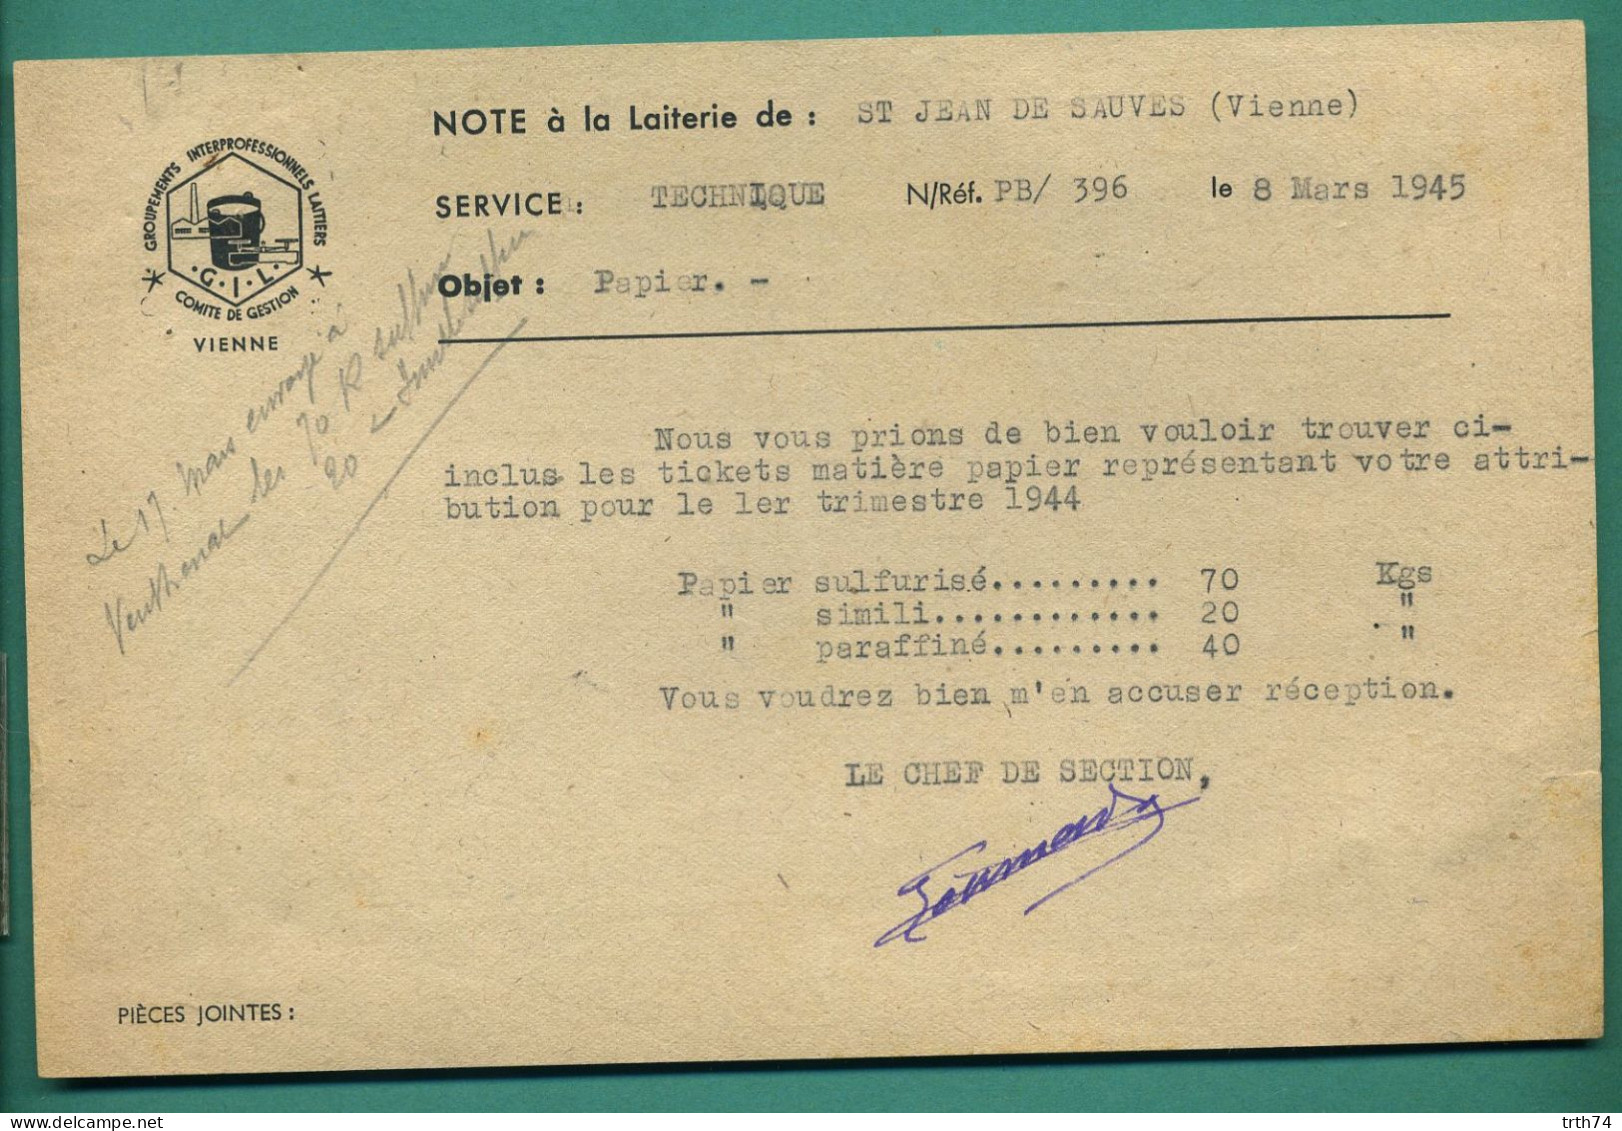 86 Saint Jean De Sauves Groupements Interprofessionnels Laitiers Note à La Laiterie 8 Mars 1945 - Lebensmittel